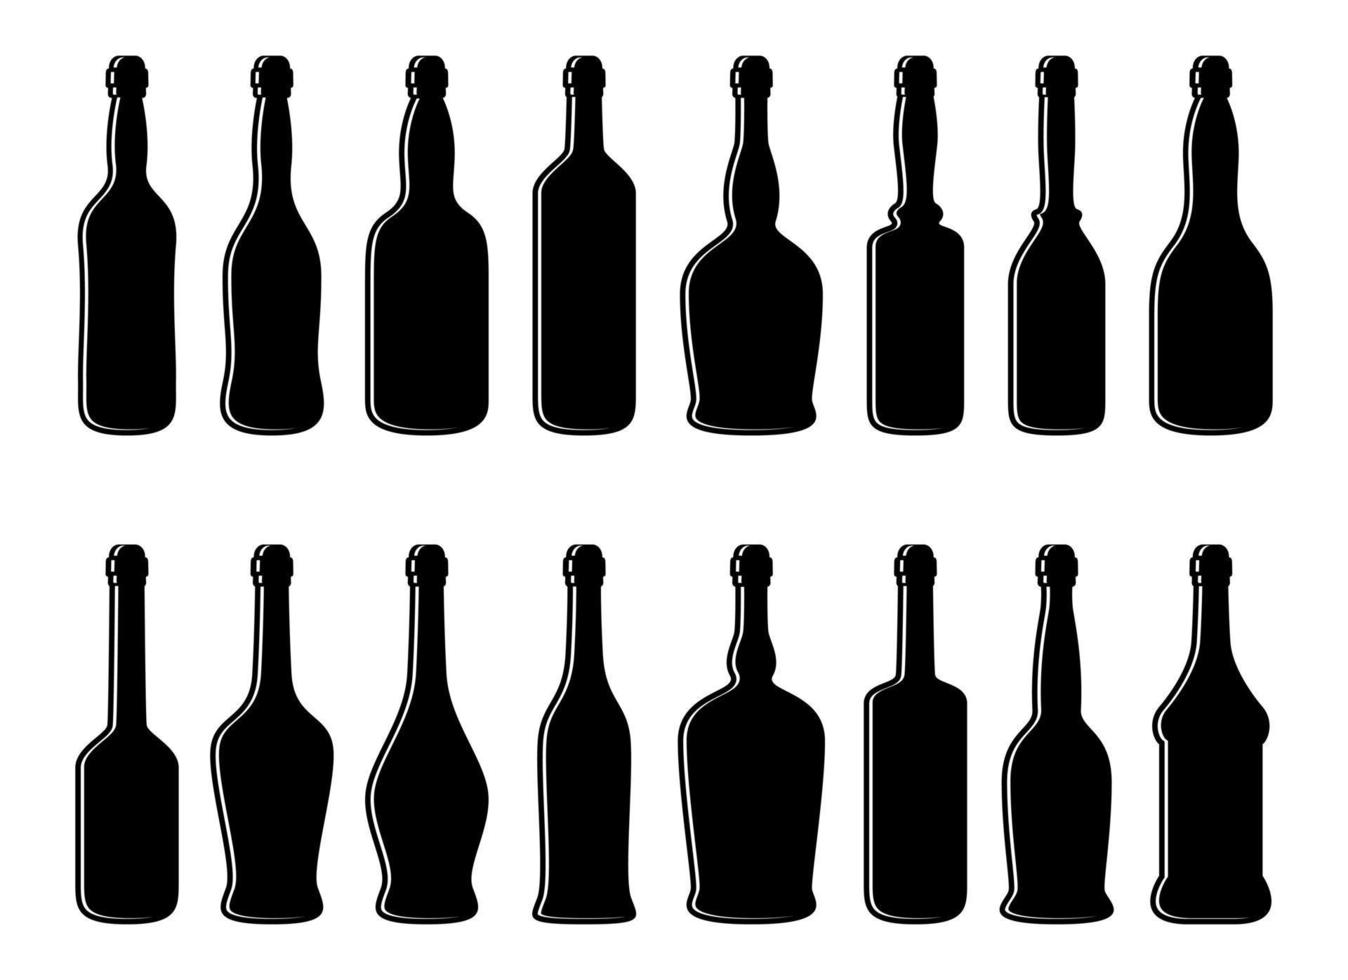 Glass bottle vector design illustration isolated on white background